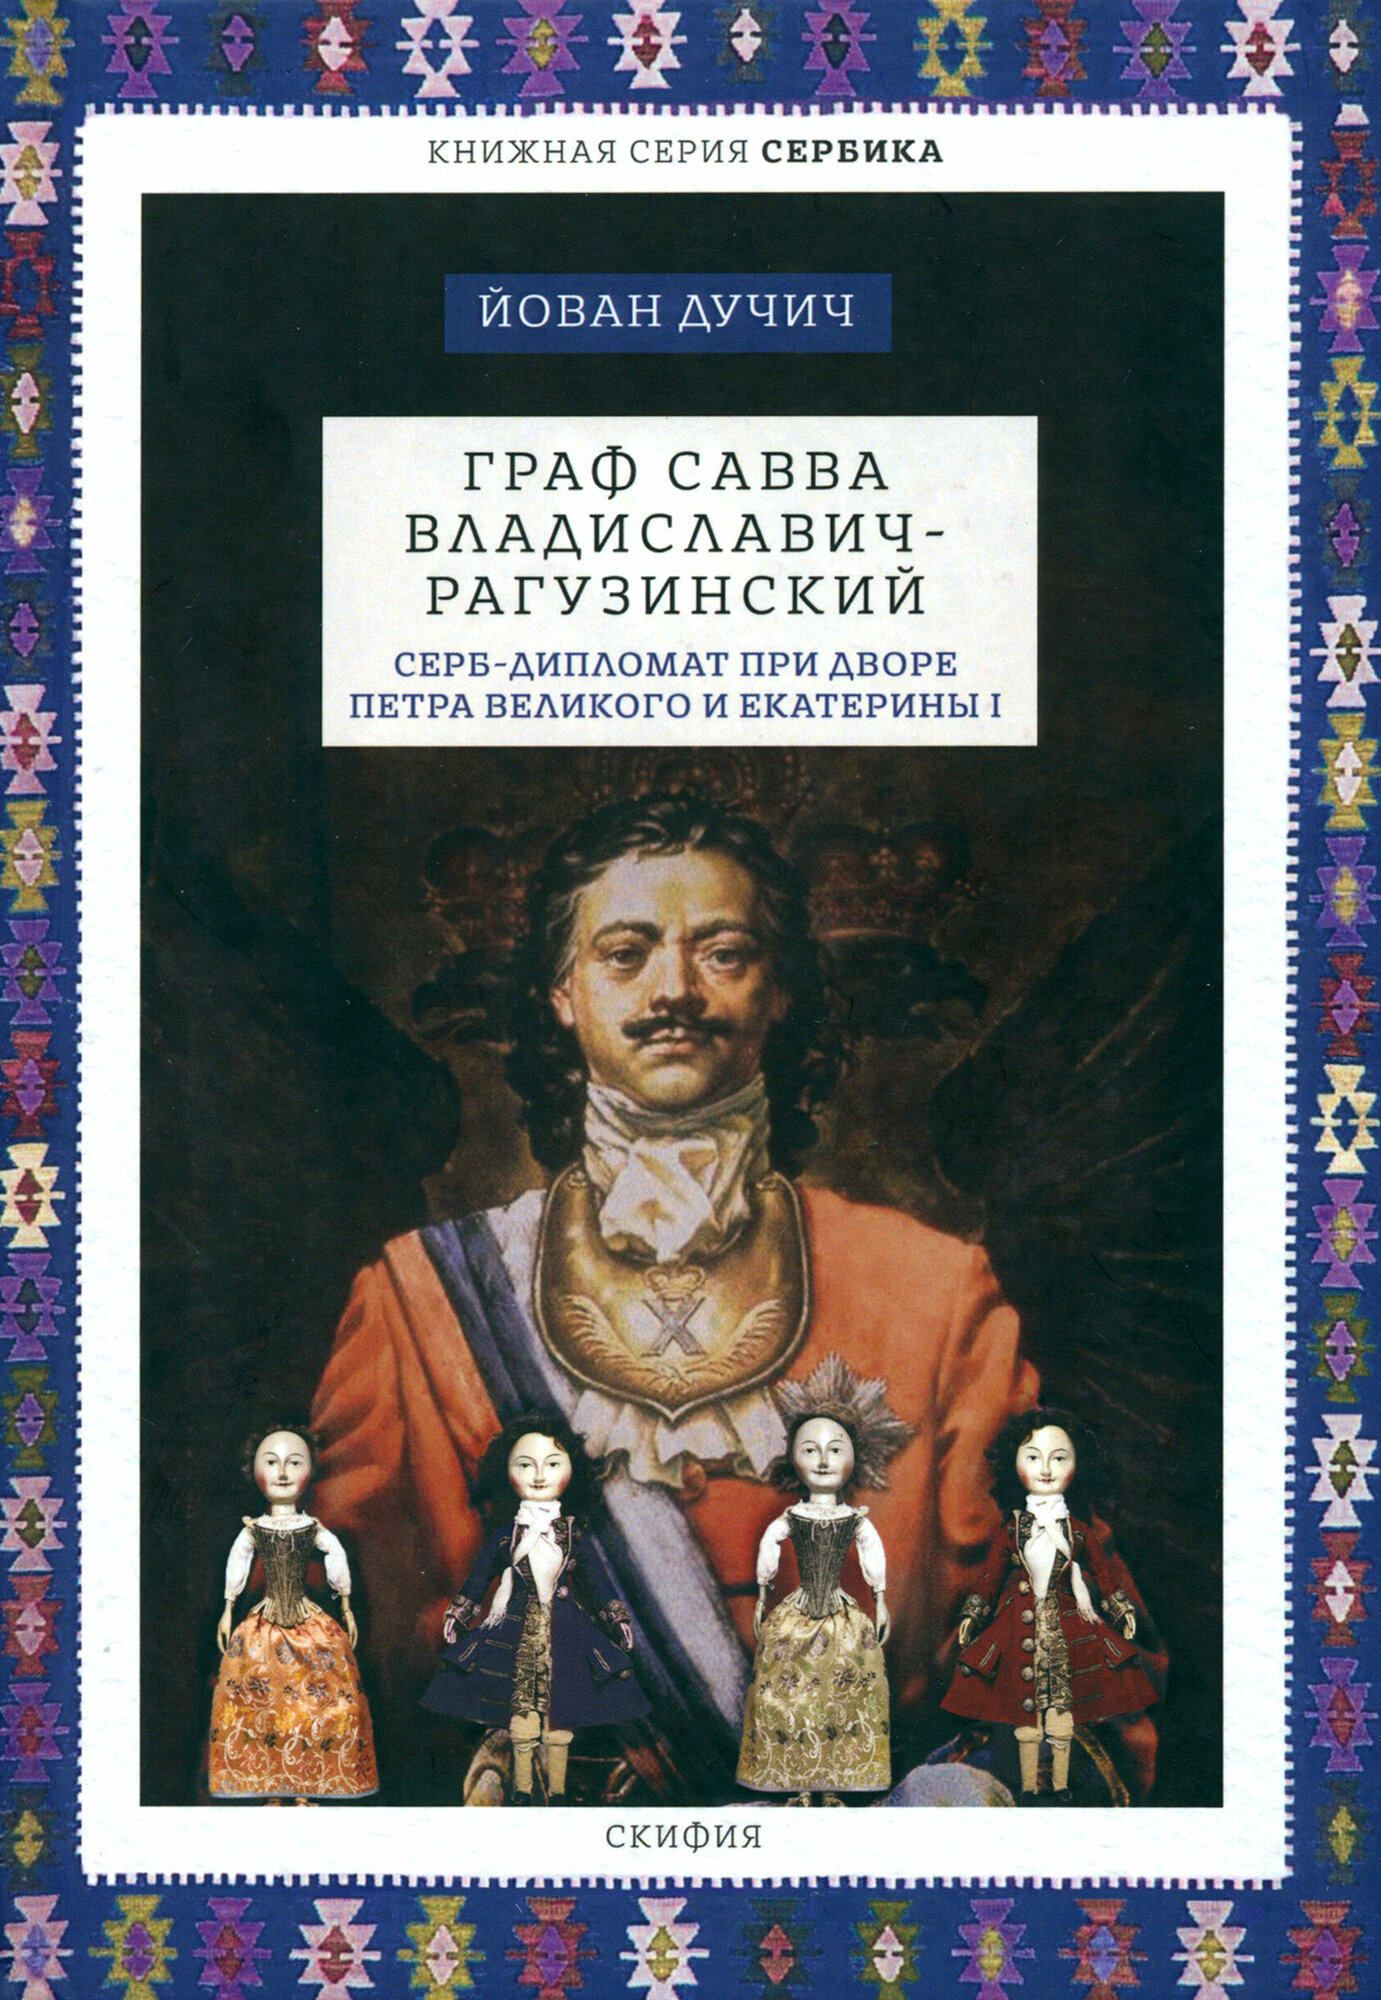 Граф Савва Владиславич-Рагузинский Серб-дипломат при дворе Петра Великого и Екатерины I - фото №3